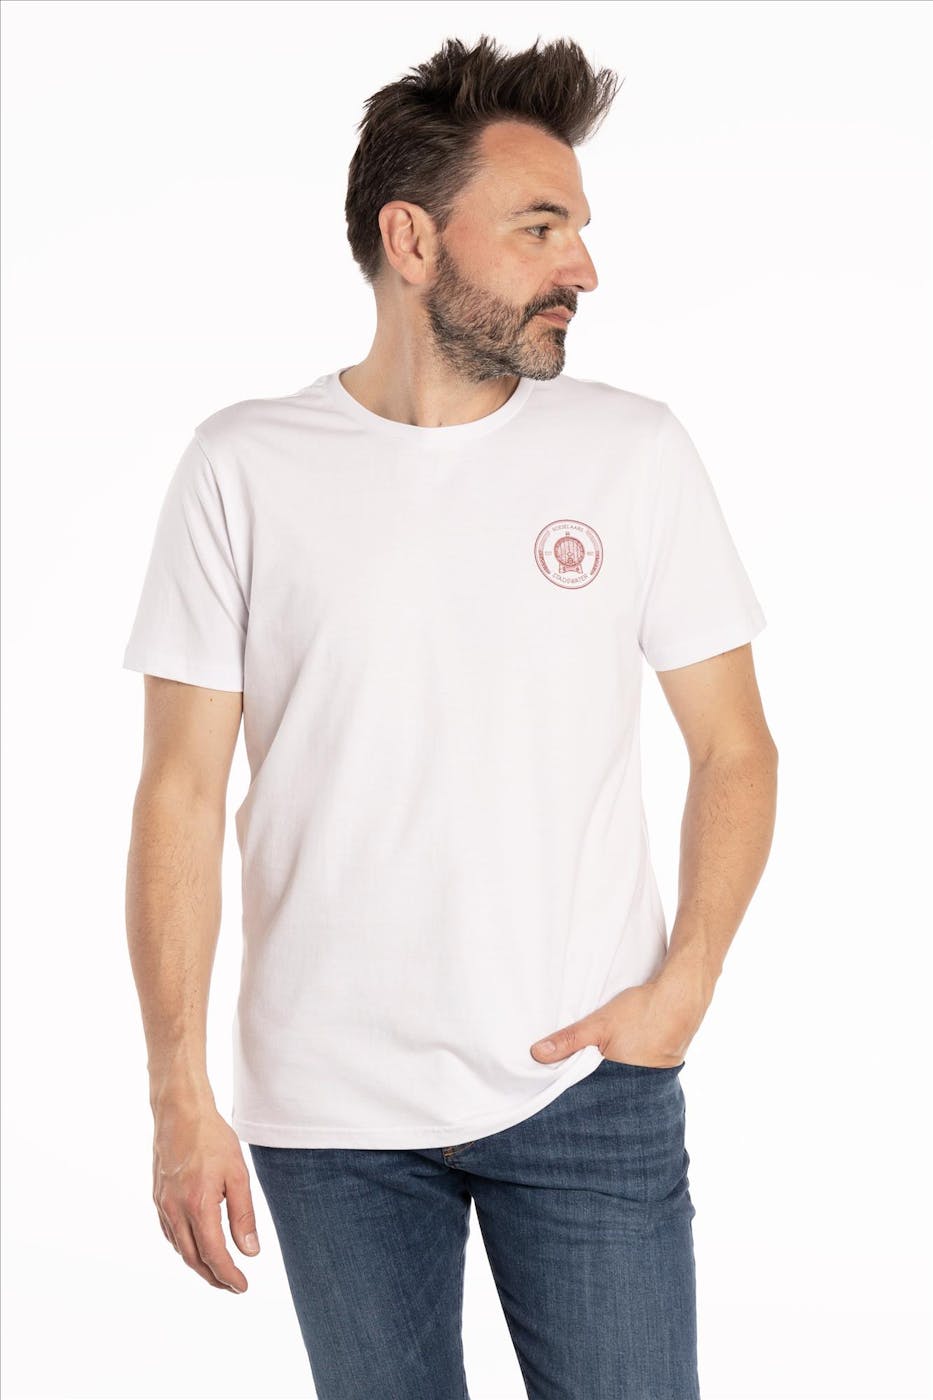 Brooklyn - Witte Local Heroes T-shirt Roeselaars Stadswater